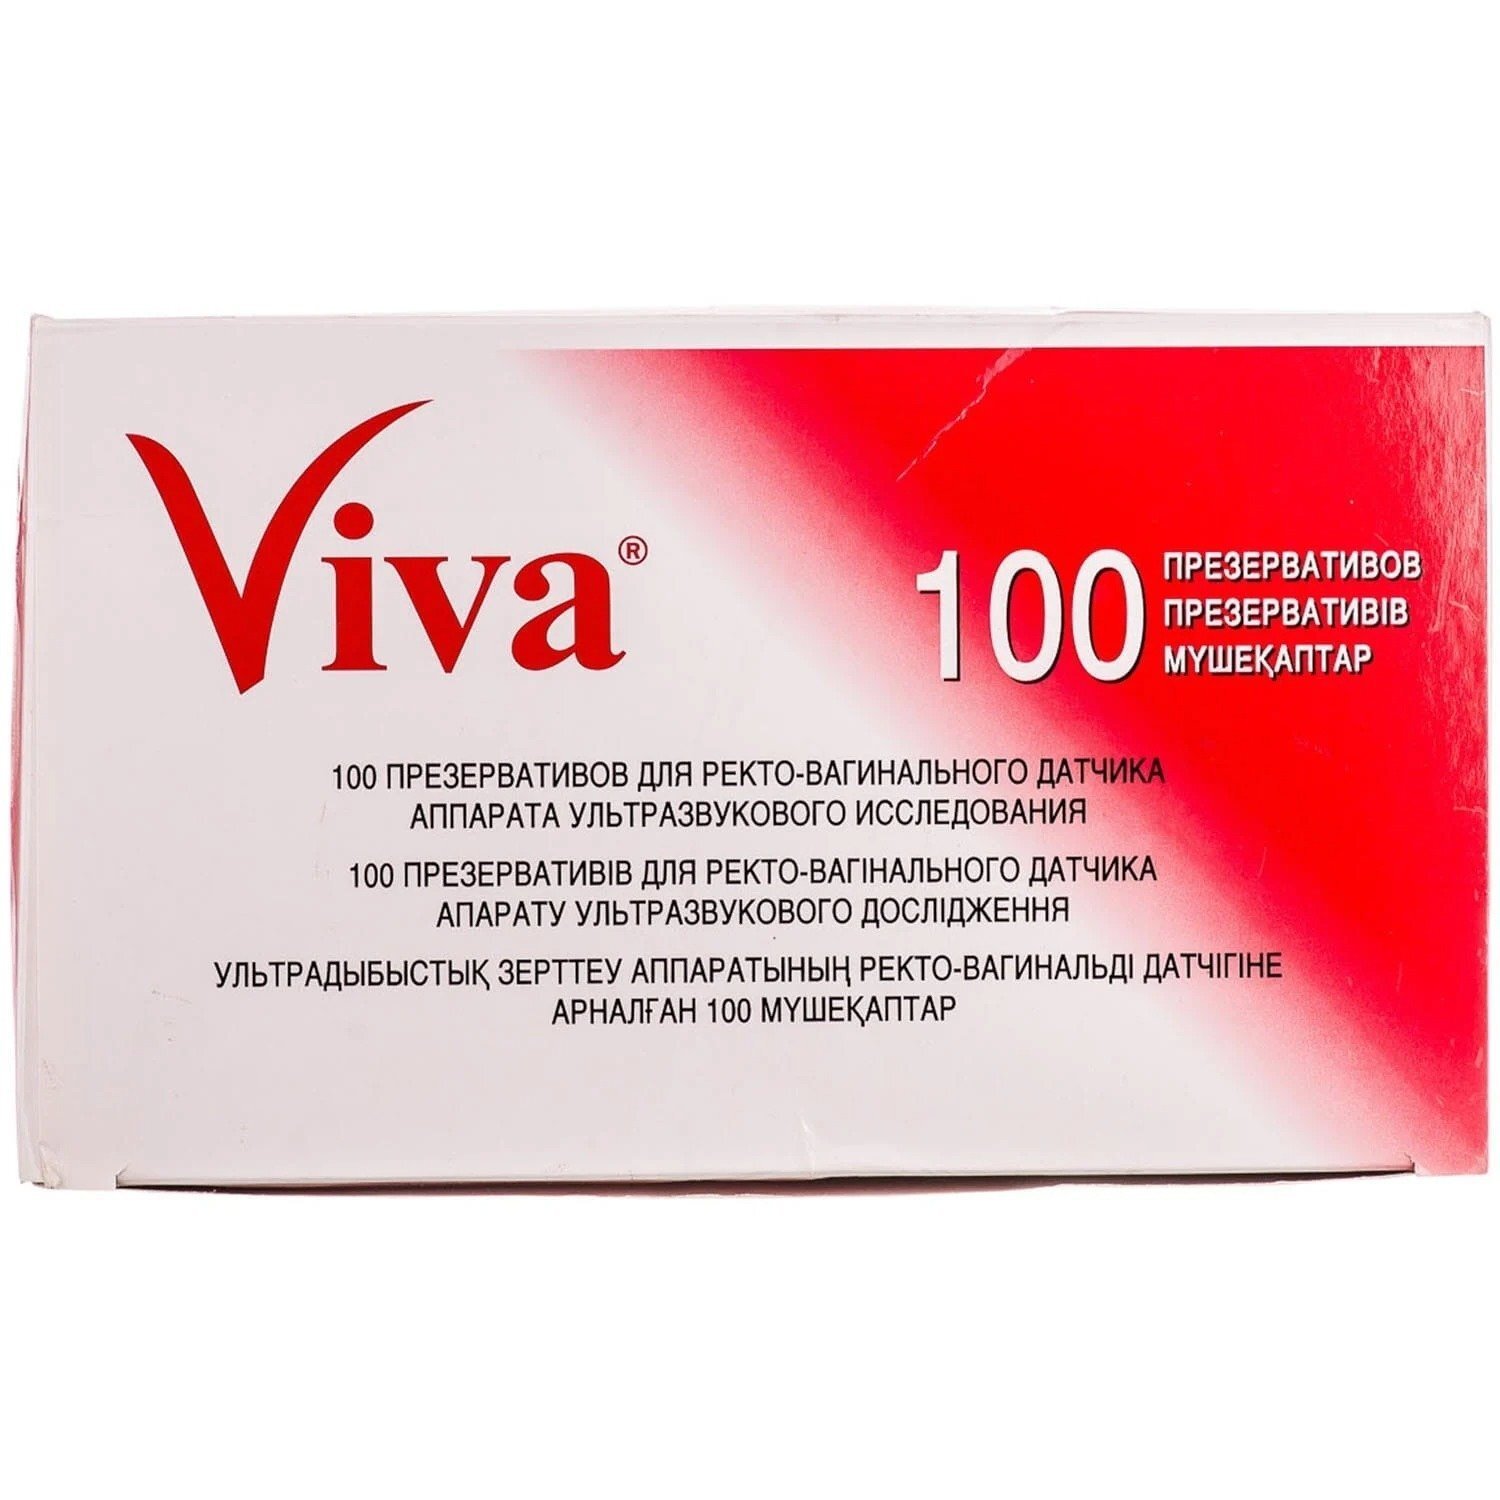 Презерватив VIVA для УЗД №100фото1